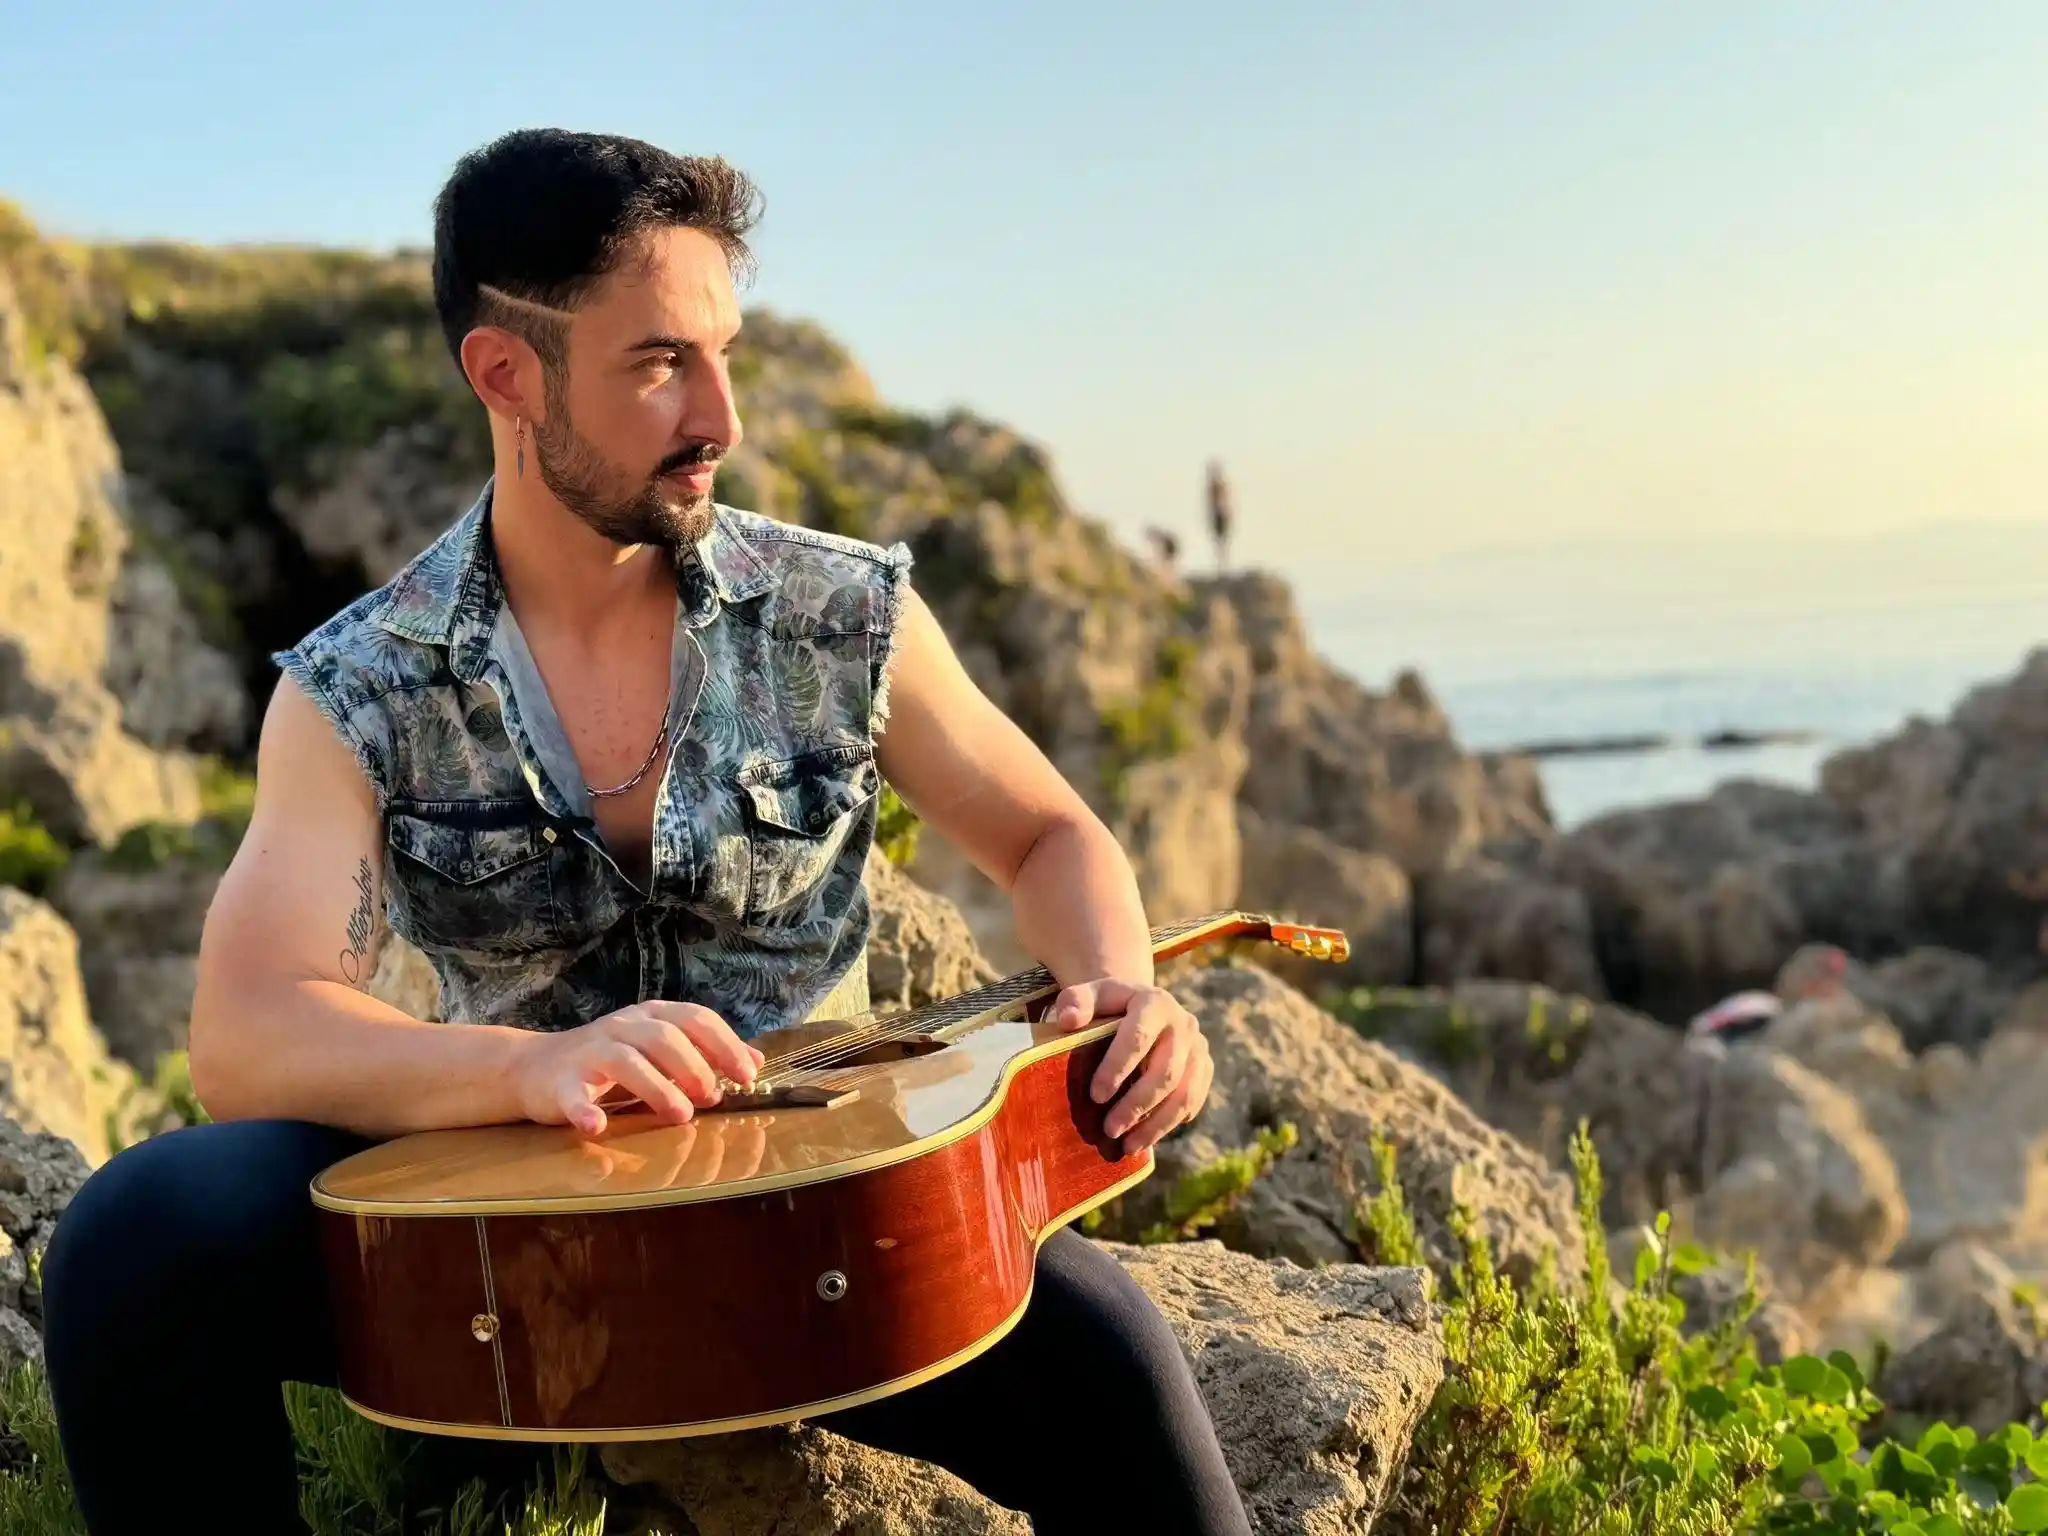 Vincenzo Pantè nuovo brano "Sento una musica" disponibile dal 26 luglio. Scopri il nuovo singolo del cantautore.